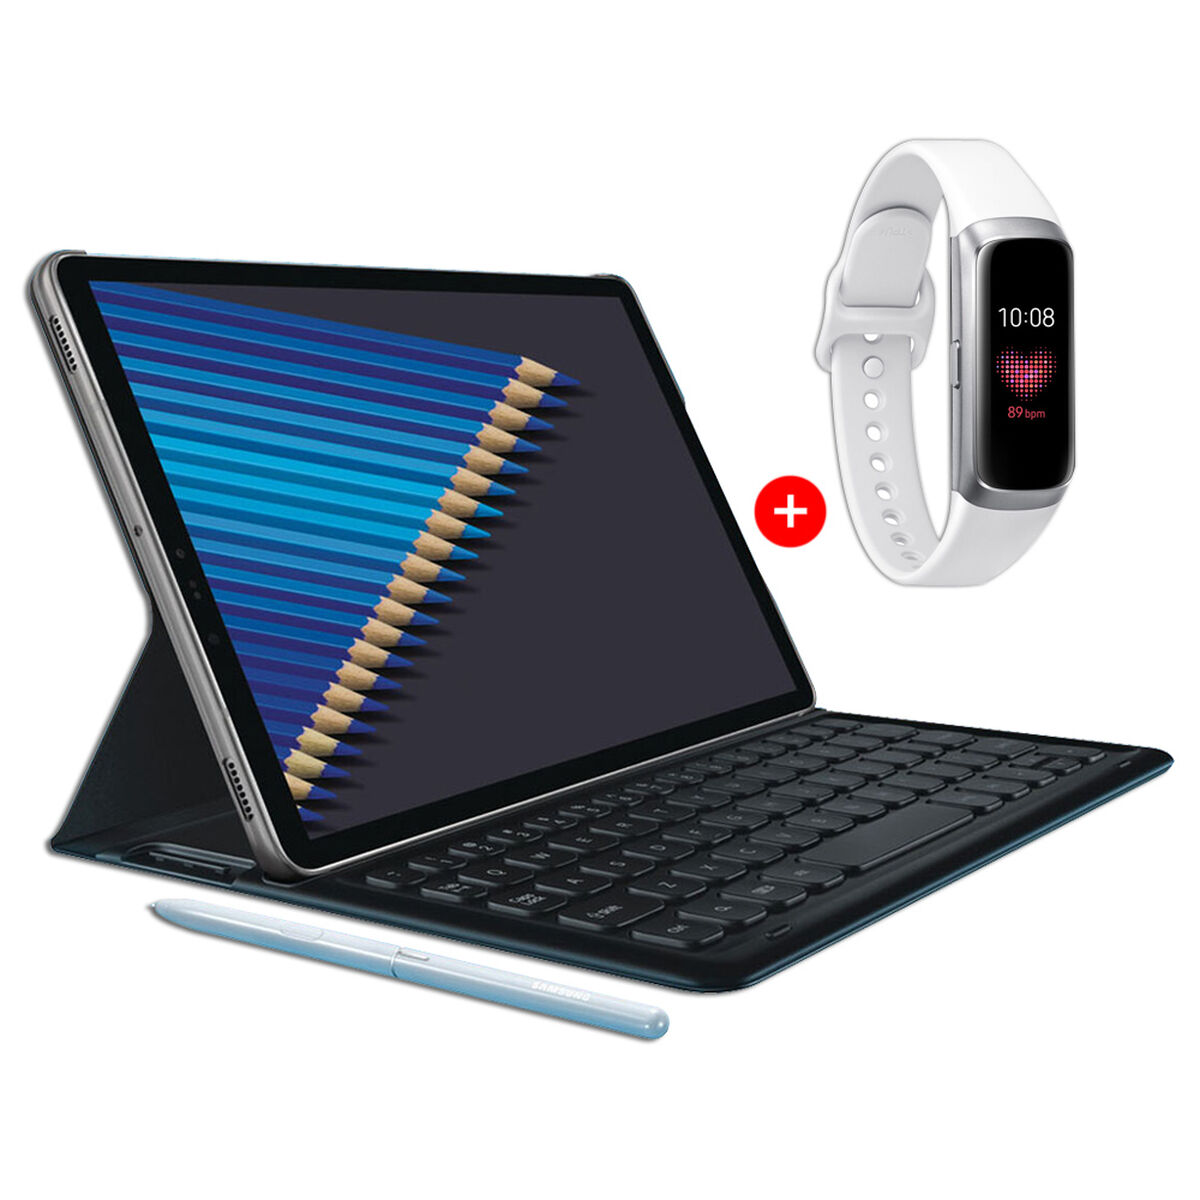 Tablet Samsung Galaxy S4 64GB con Keyboard y S Pen + SmartWatch Samsung Galaxy Fit